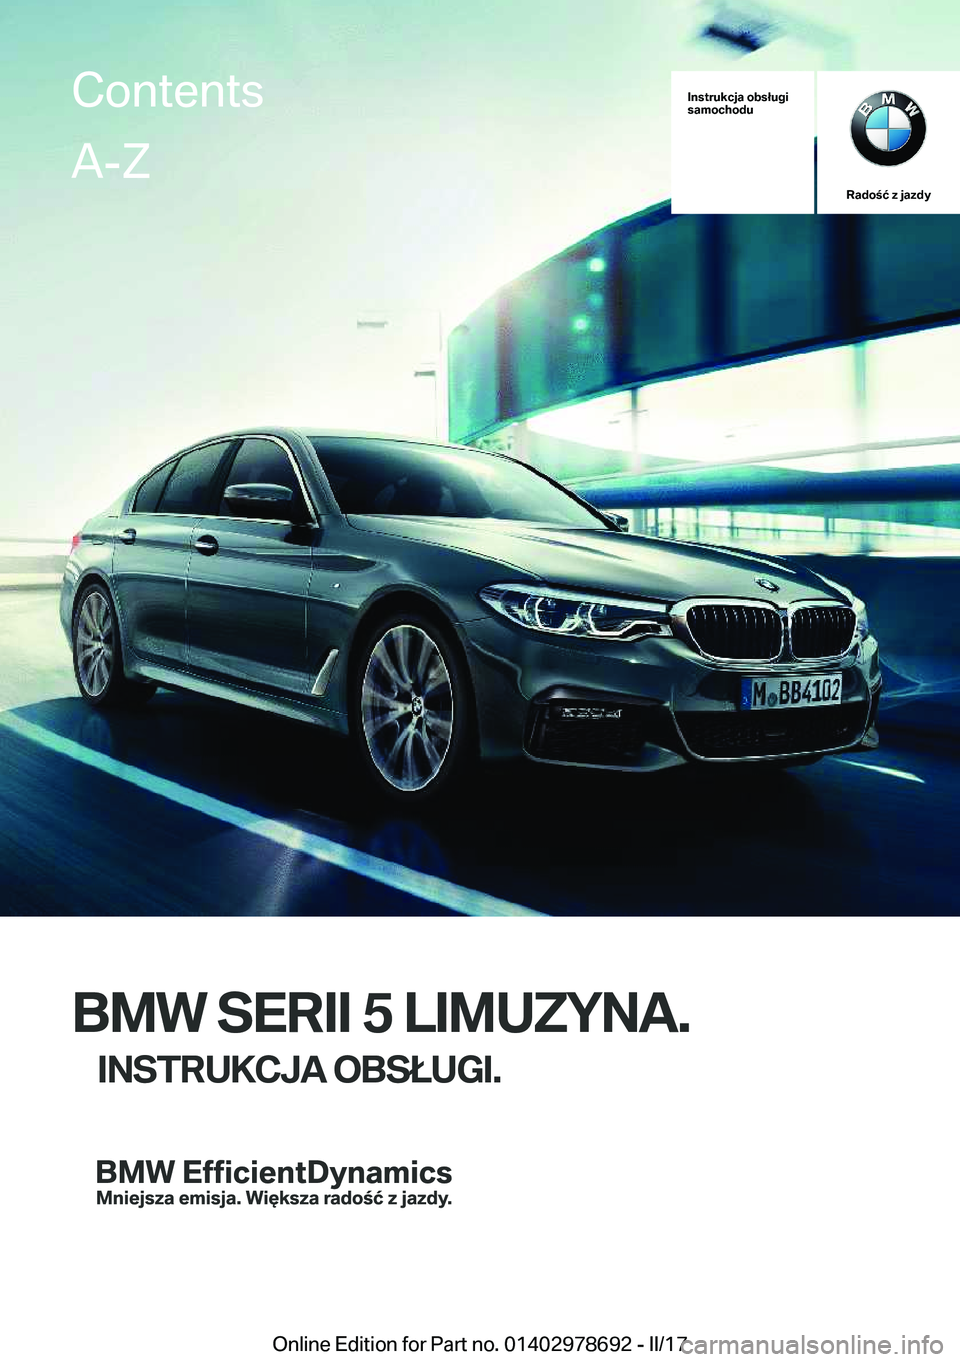 BMW 5 SERIES 2017  Instrukcja obsługi (in Polish) �I�n�s�t�r�u�k�c�j�a��o�b�s�ł�u�g�i
�s�a�m�o�c�h�o�d�u
�R�a�d�o�